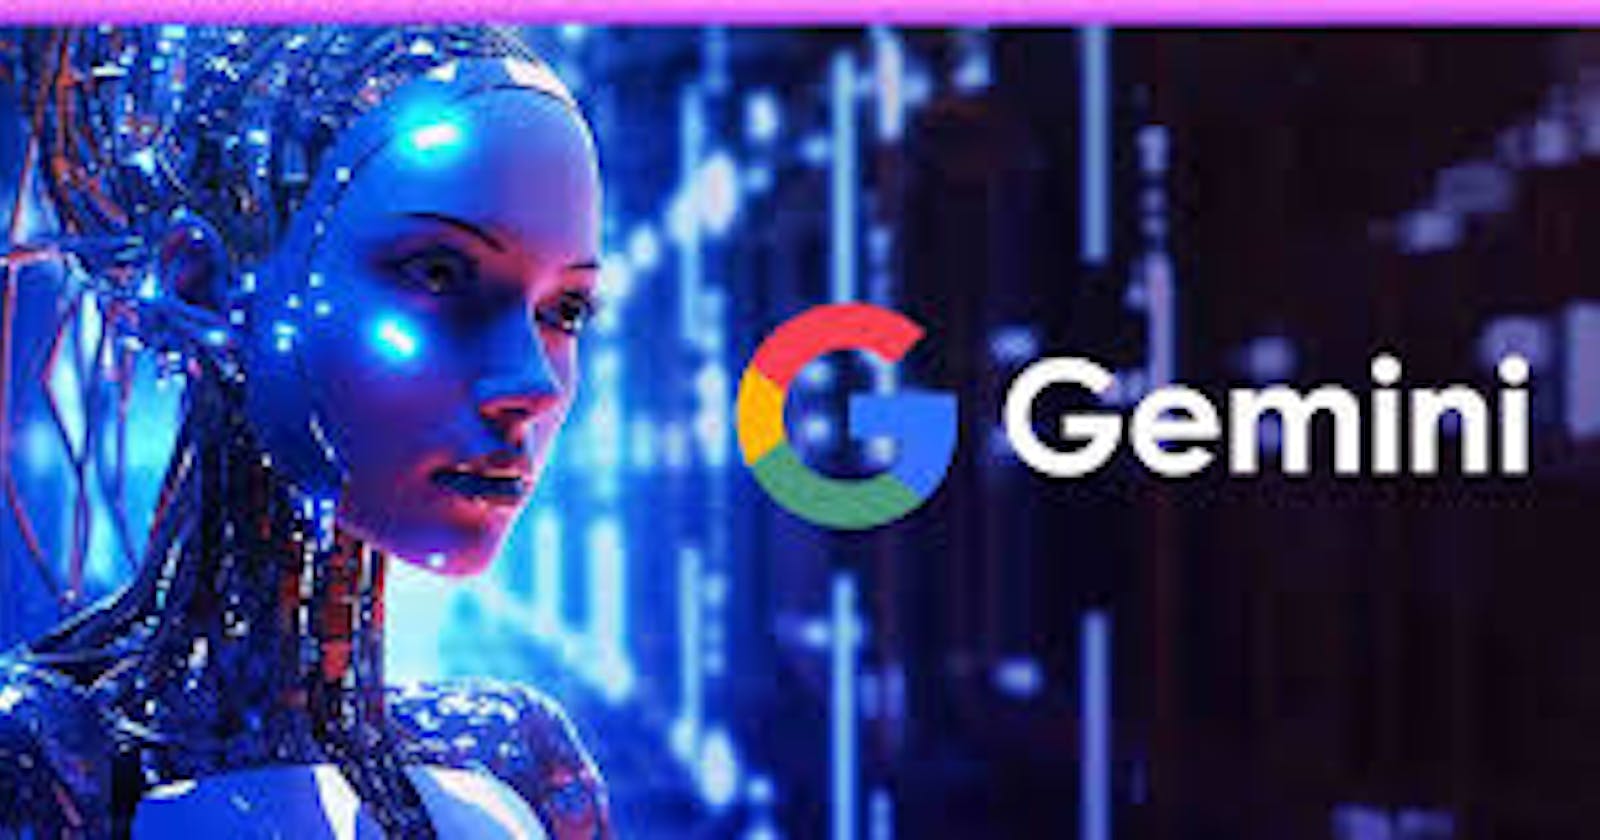 How to Use Gemini AI?